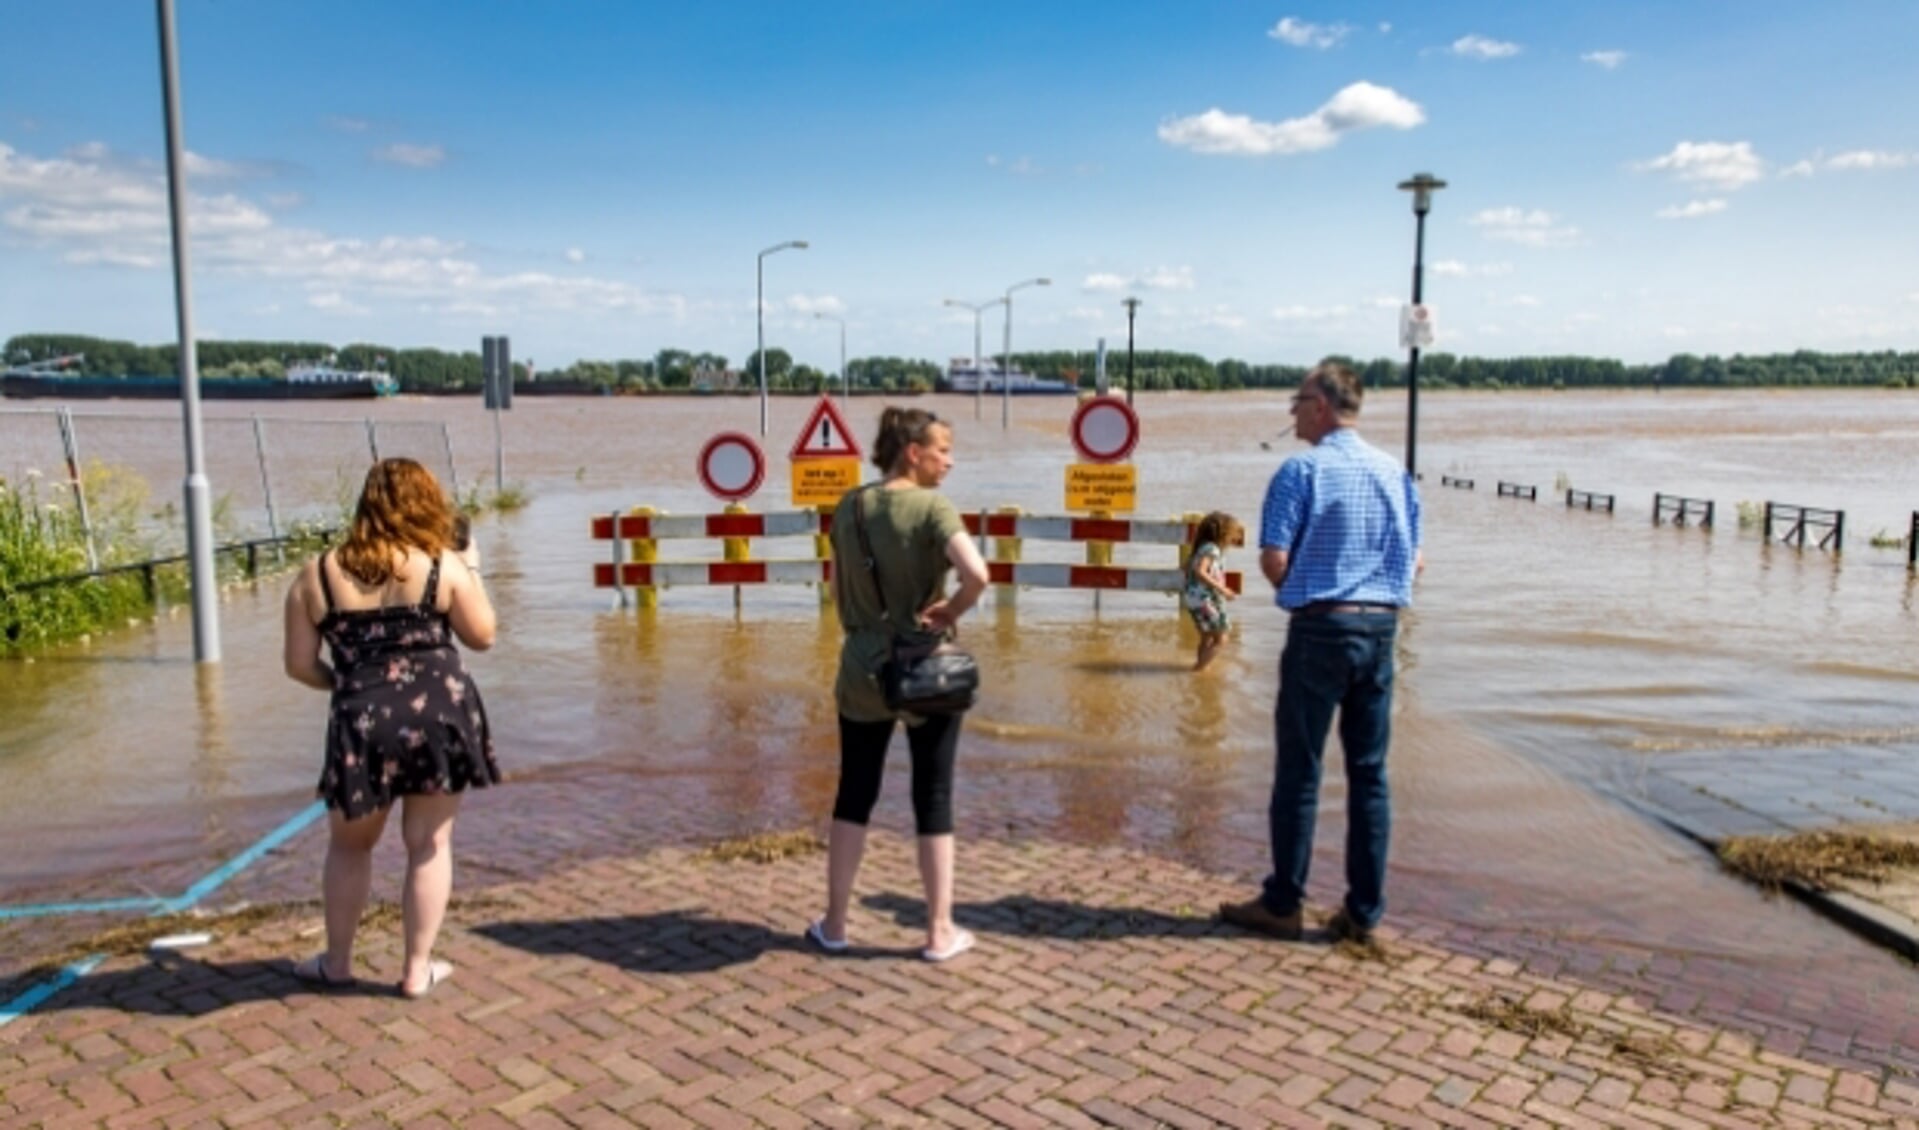 De hoge waterstand van de Waal in juli 2021 trekt veel kijkers bij de Veerweg in Tiel. De pont vaart nog. Foto Jan Bouwhuis.